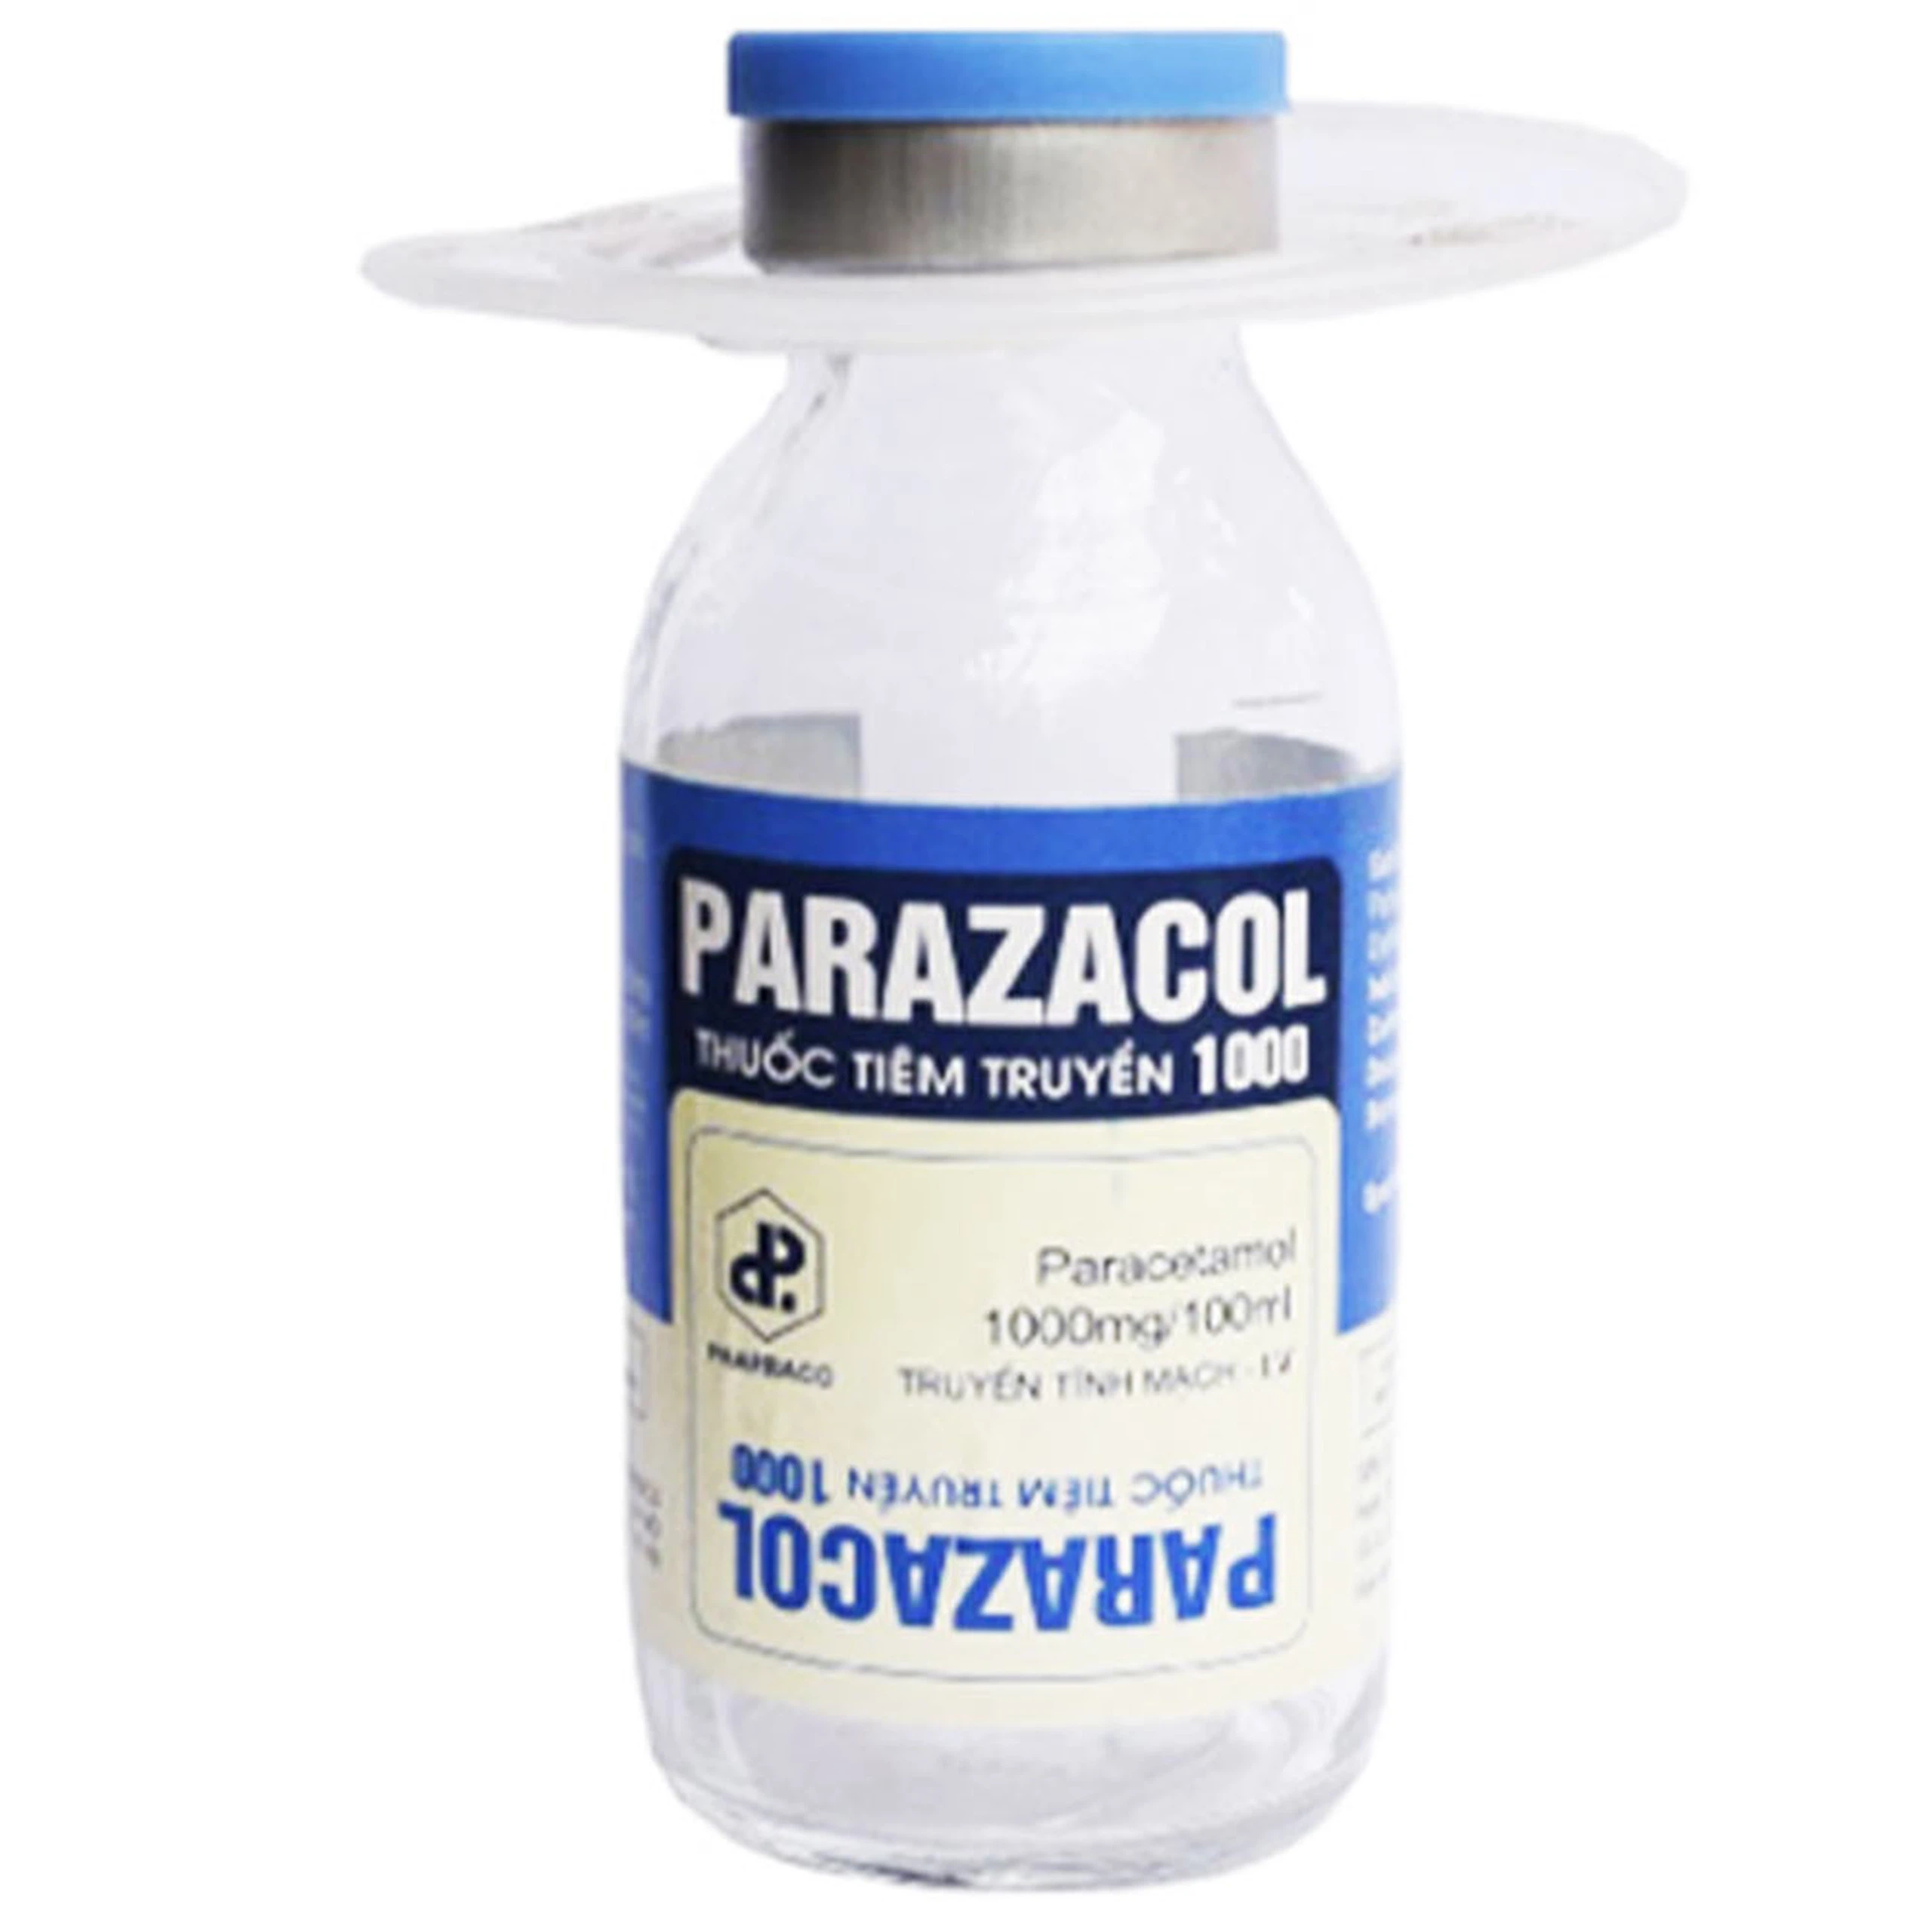 Thuốc tiêm truyền Parazacol 1000 Pharbaco điều trị sốt, đau ở mức độ nhẹ và vừa (100ml)